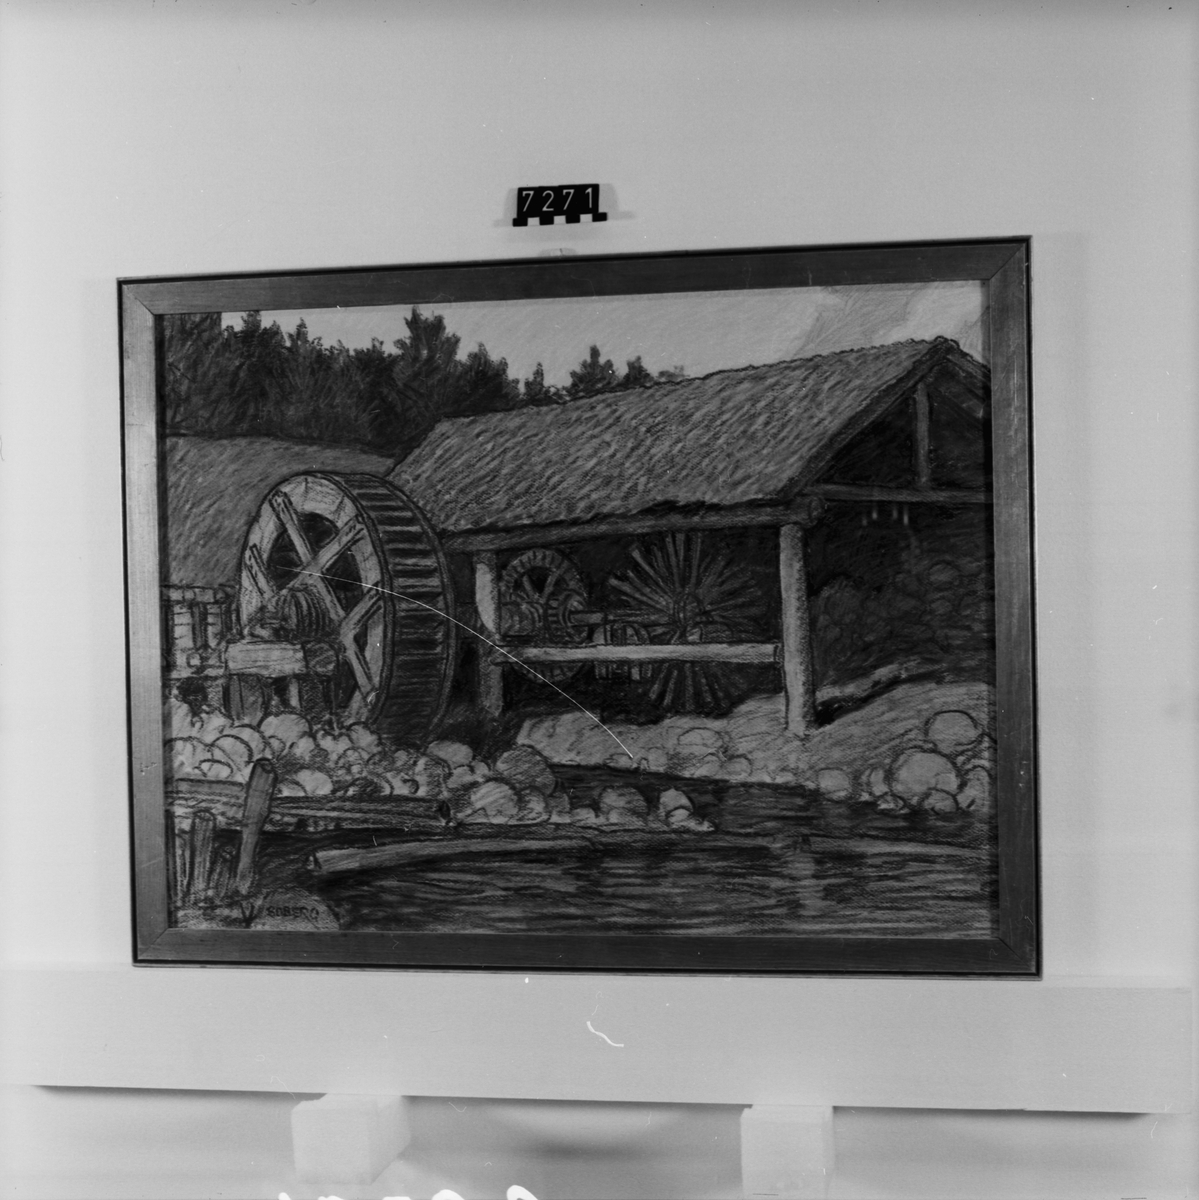 Signerad: "Boberg". På tavlans baksida: "Linskäkta i Njurunda# (Hälsingland) 1920". "Ferdinand Boberg". I glas och förgylld ram.